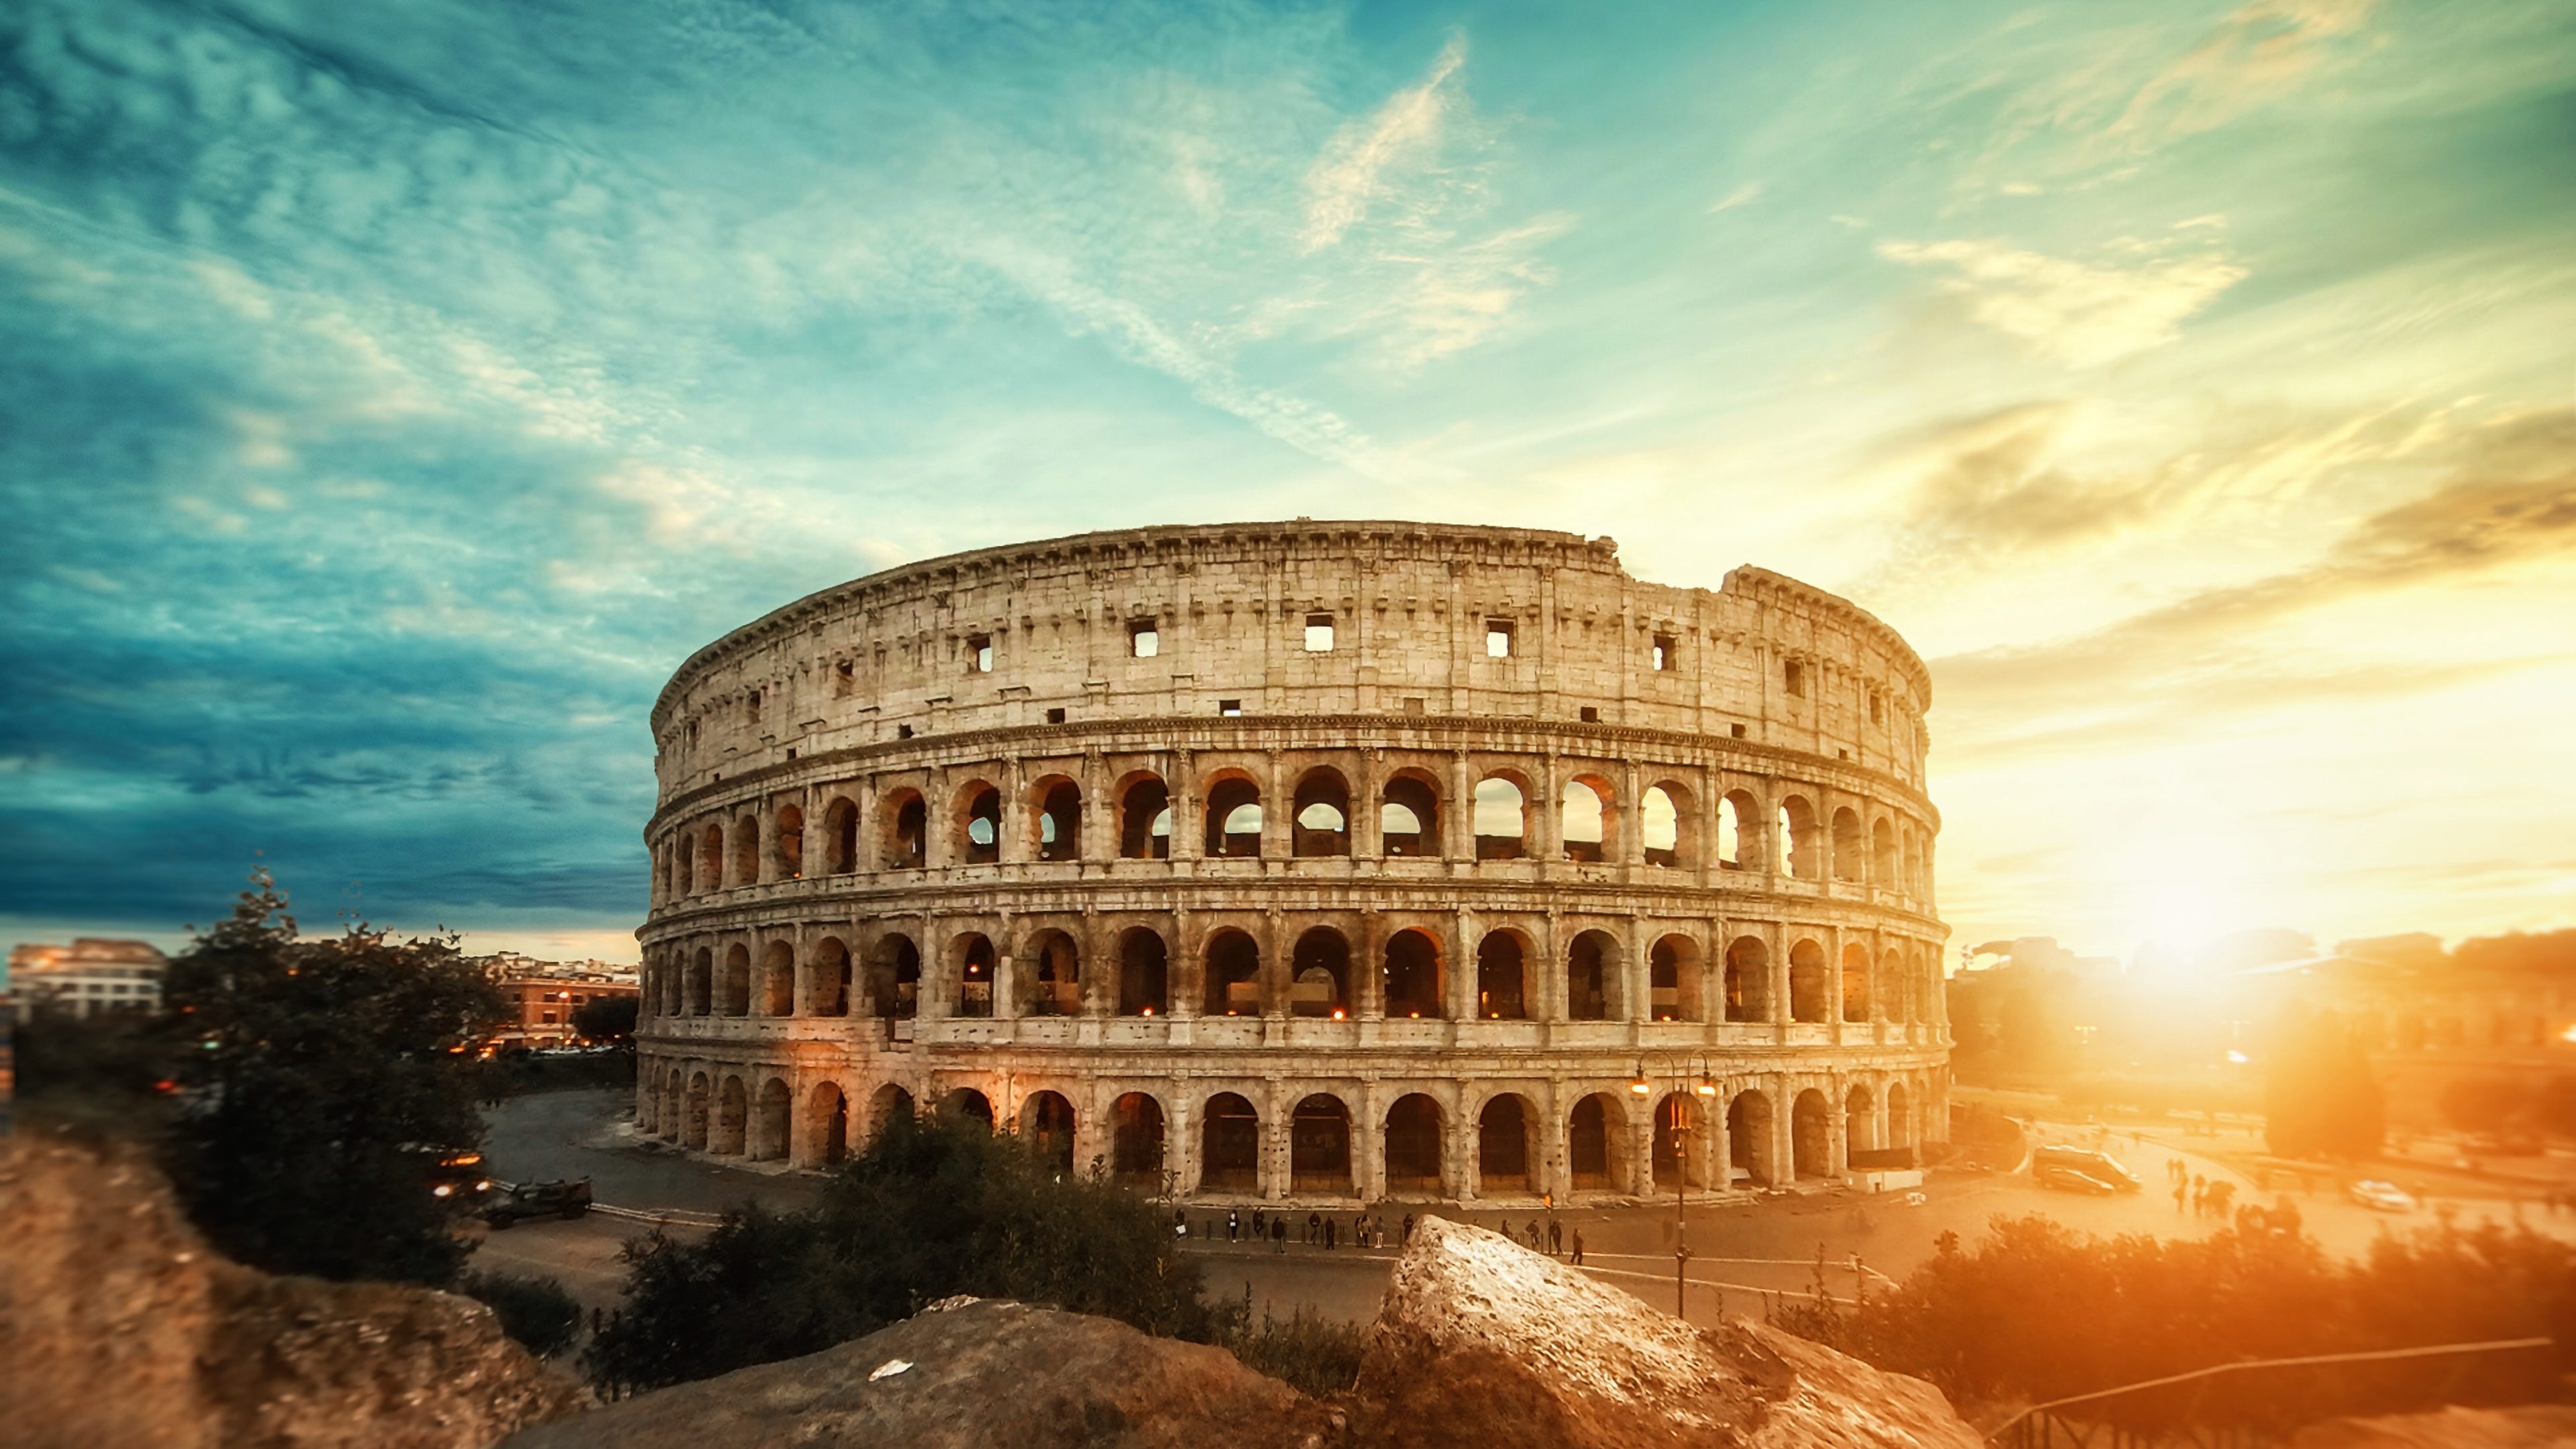 Sunset view, Colosseum Rome, 4K wallpaper, Breathtaking scenery, 3840x2160 4K Desktop